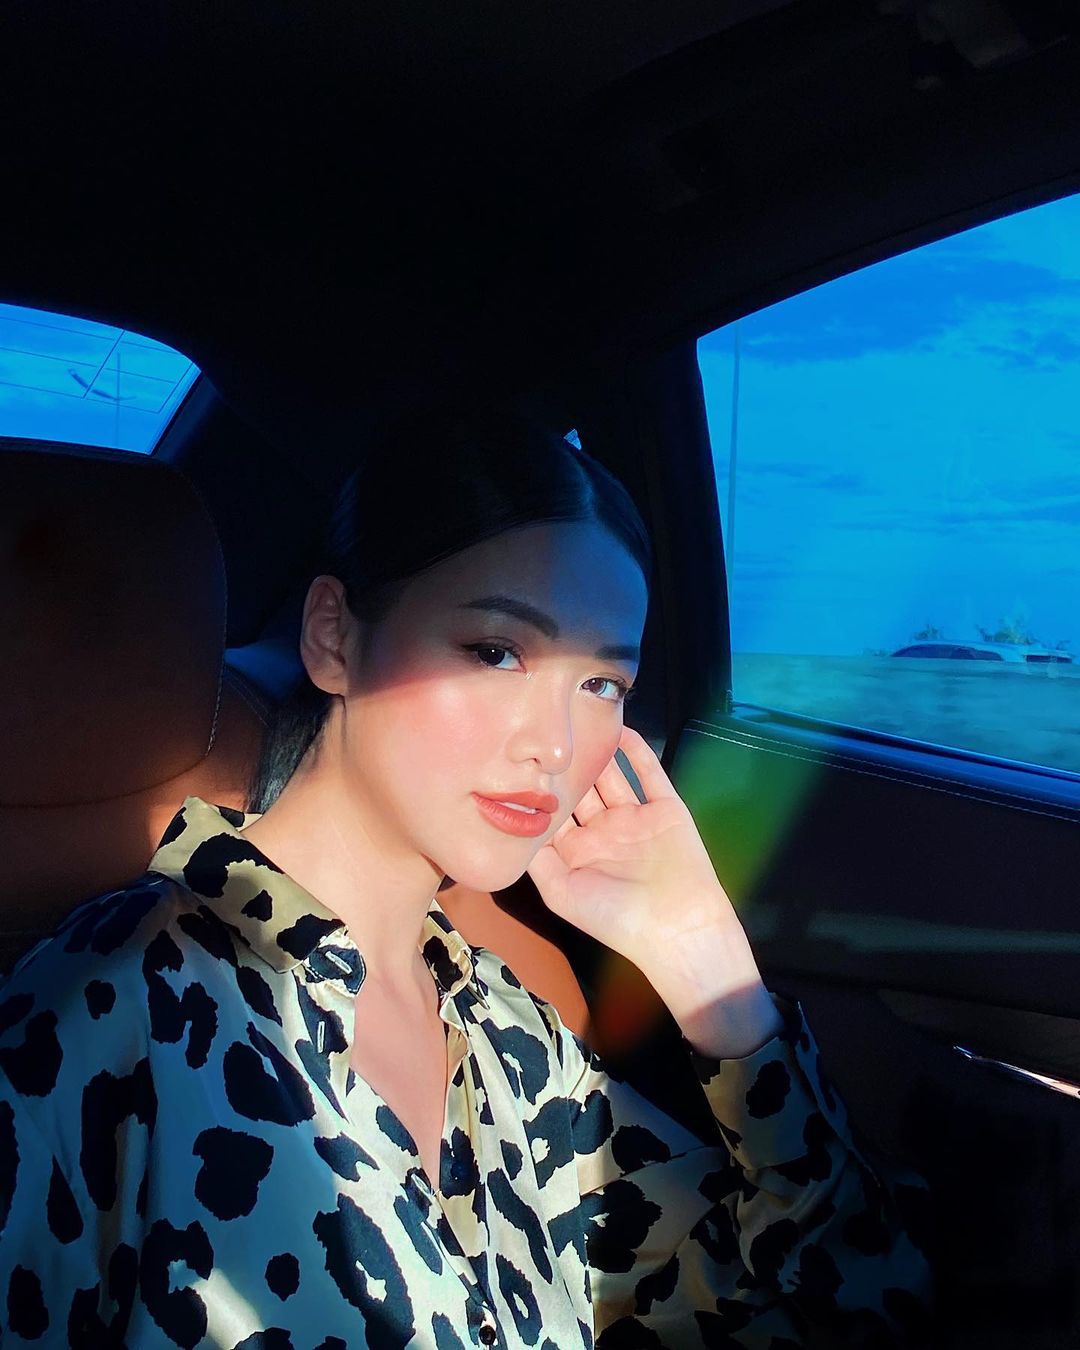 Hoa hậu Phương Khánh chúc khán giả ngày mới tốt lành với tẩm ảnh chân dung khoe nhan sắc xinh đẹp sau khi được make up chỉn chu.